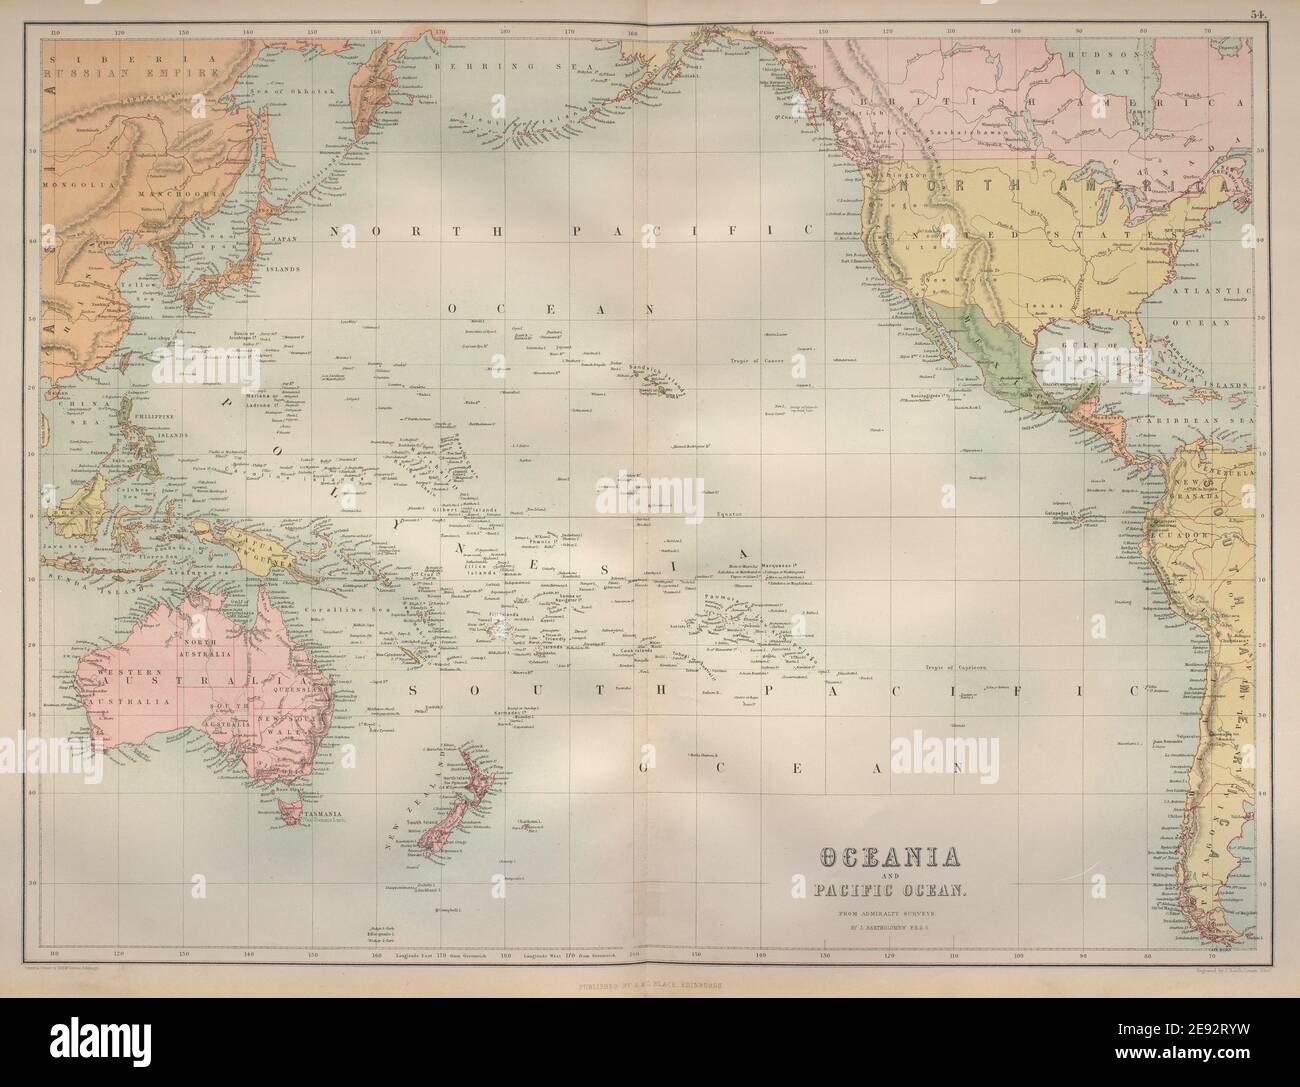 Ozeanien Und Pazifischer Ozean. Australasien Polynesien Australien. BARTHOLOMEW 1870 Karte Stockfoto